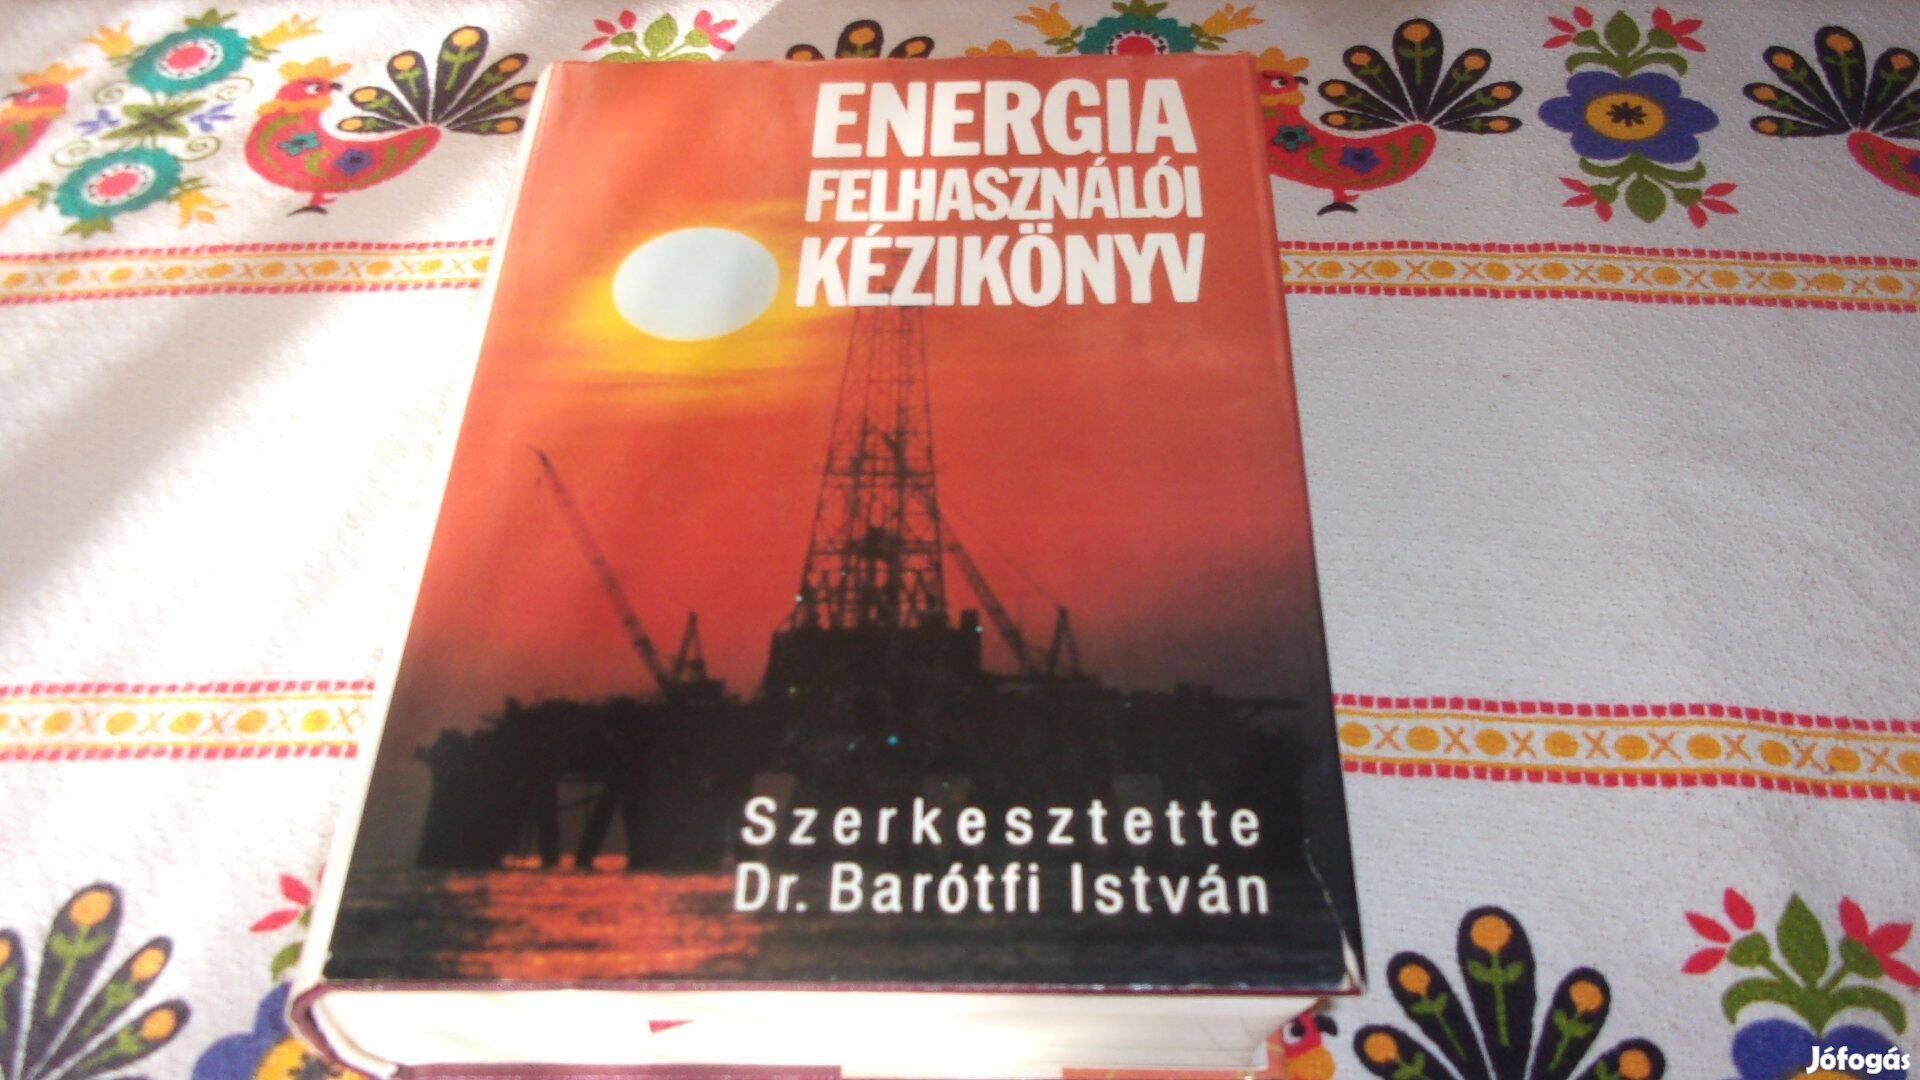 Energia felhasználói kézikönyv . Szerkesztette Dr Barotfi István